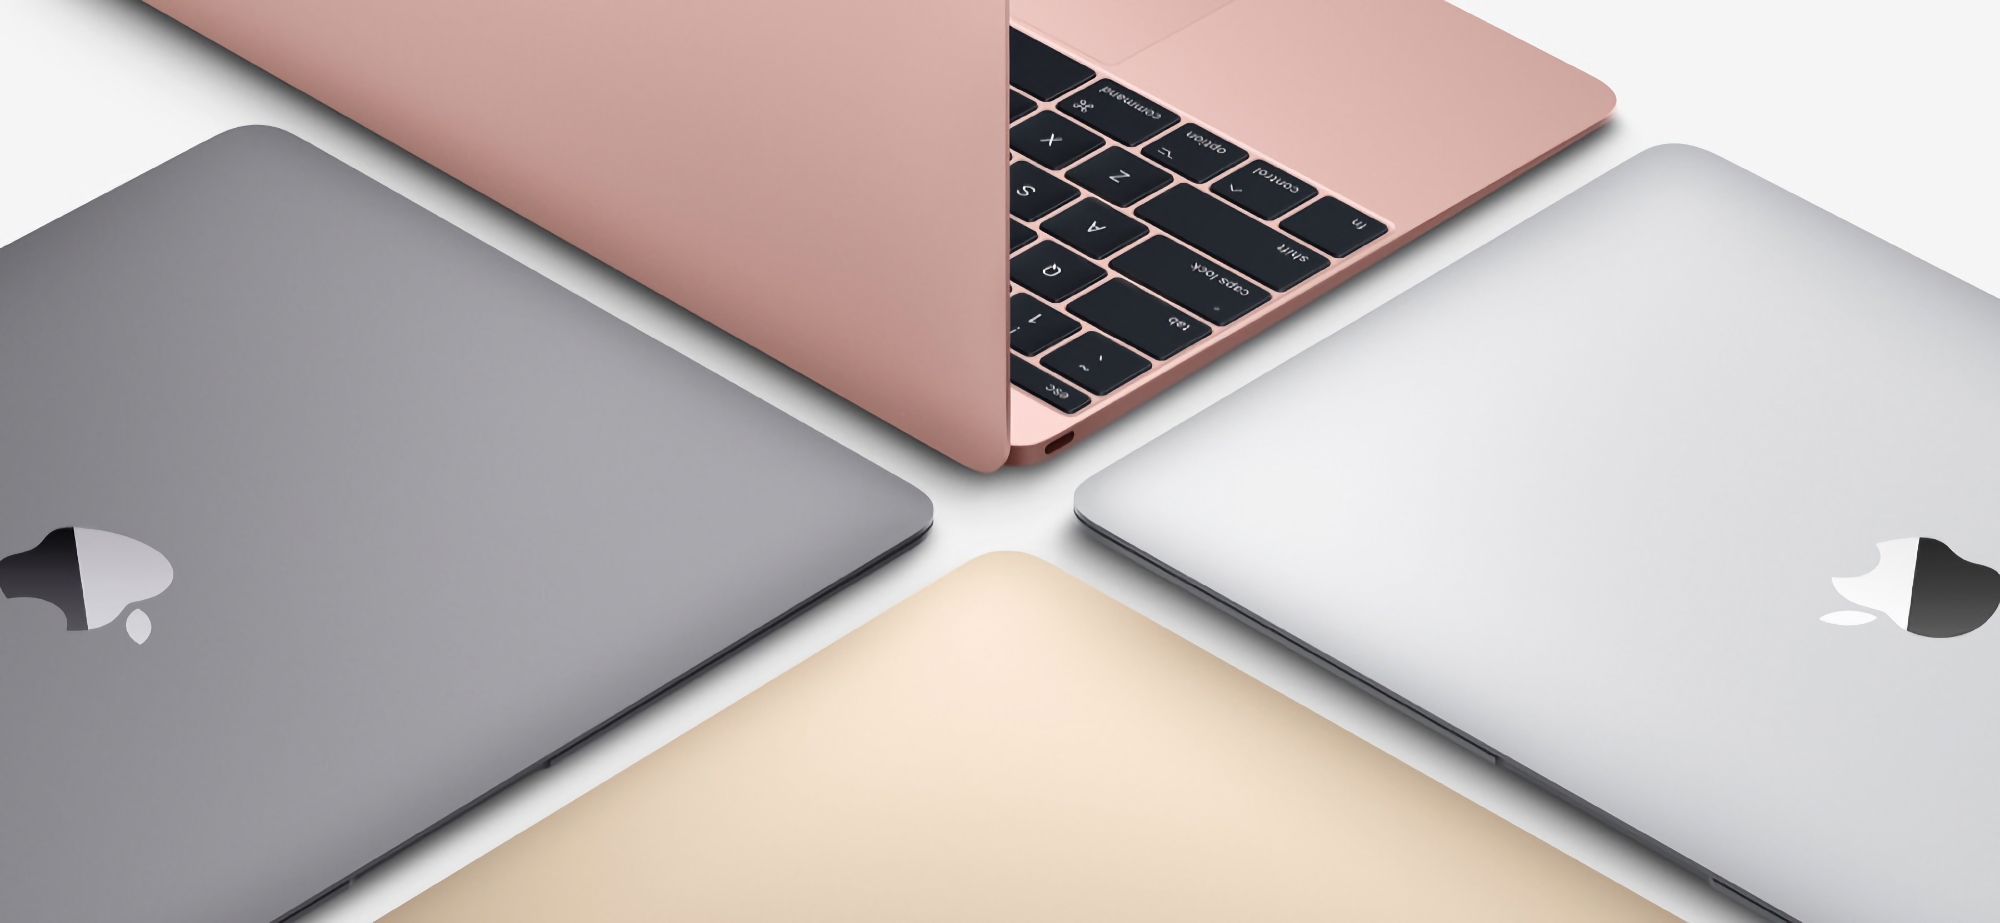 Voci di corridoio: Apple sta lavorando a un MacBook economico, la novità arriverà sul mercato in due versioni e costerà circa 700 dollari